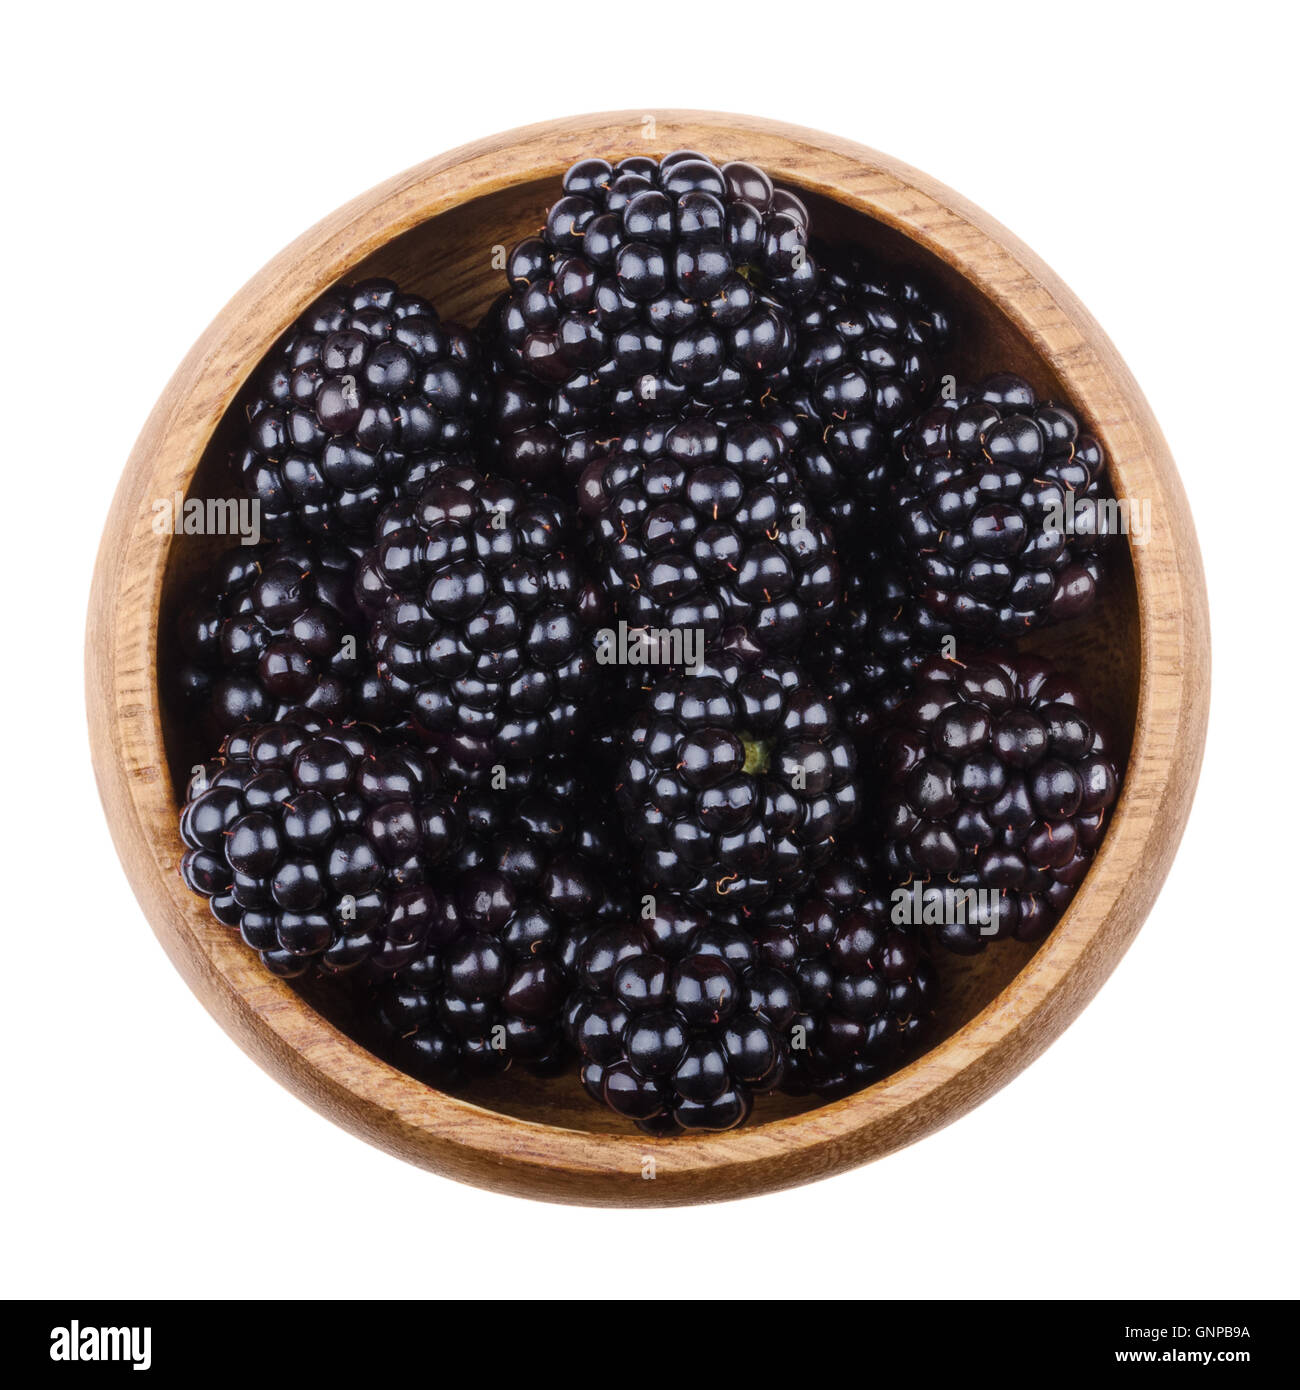 Les mûres dans un bol en bois sur fond blanc. Fruits mûrs comestible noir de Rubus fruticosus. Banque D'Images